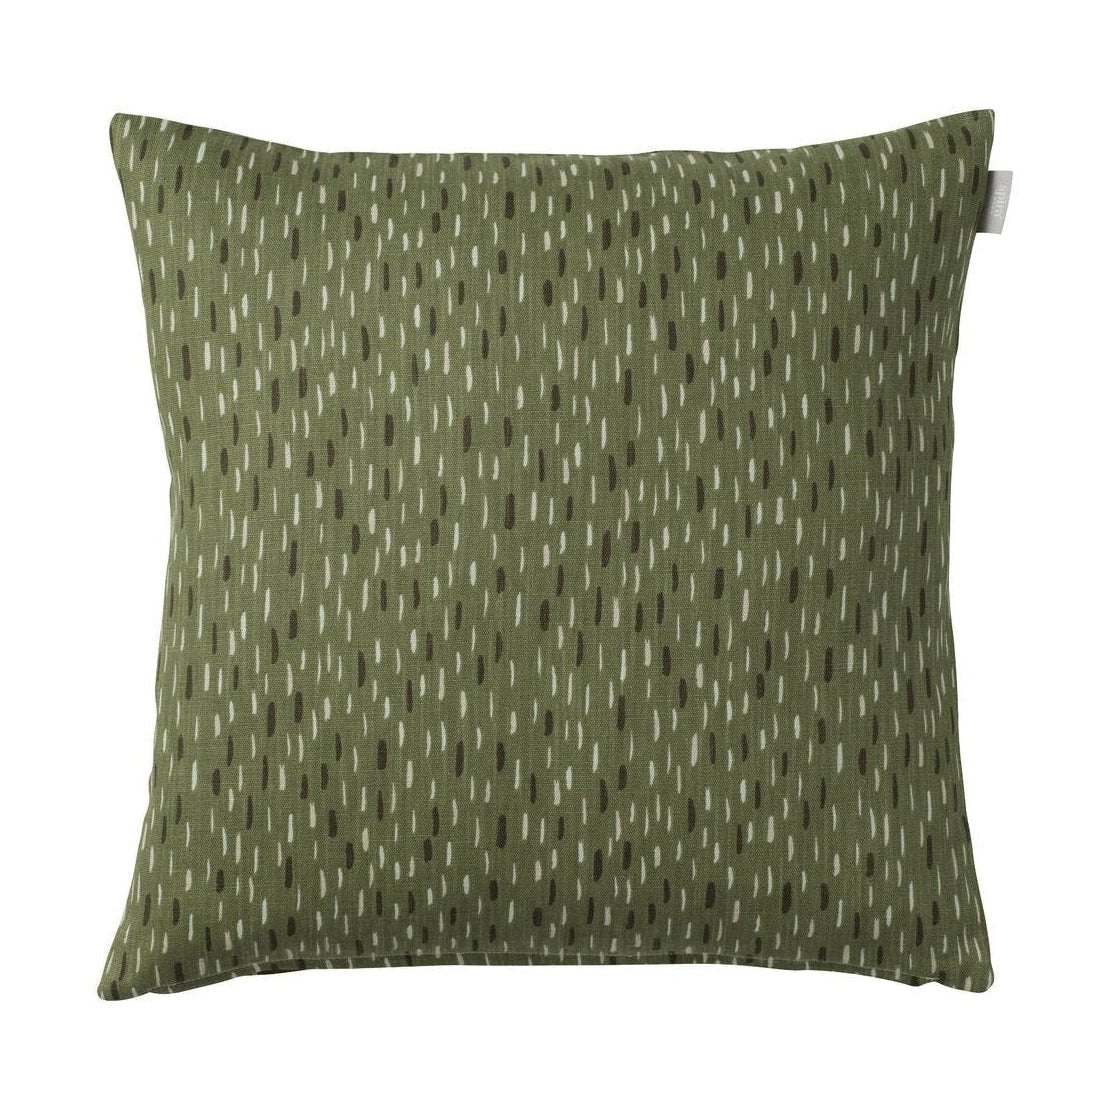 Spira Art Pillow Cover, Green